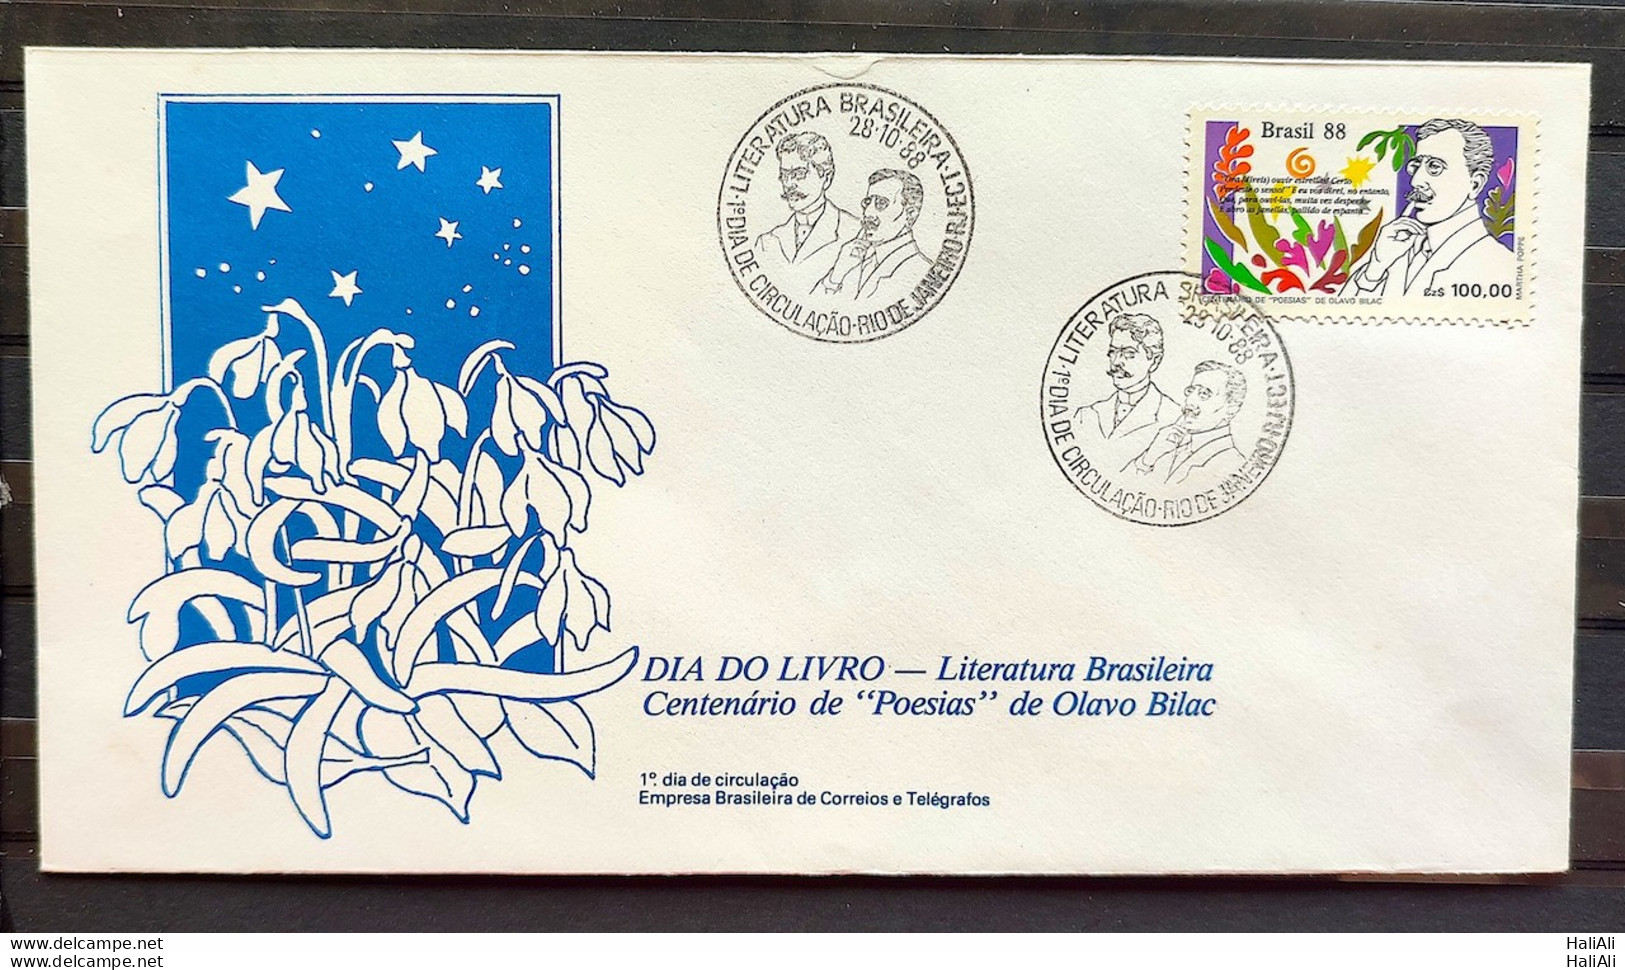 Brazil Envelope FDC 455 1988 Book Day Literature Olavo Bilac CBC RJ 2 - FDC